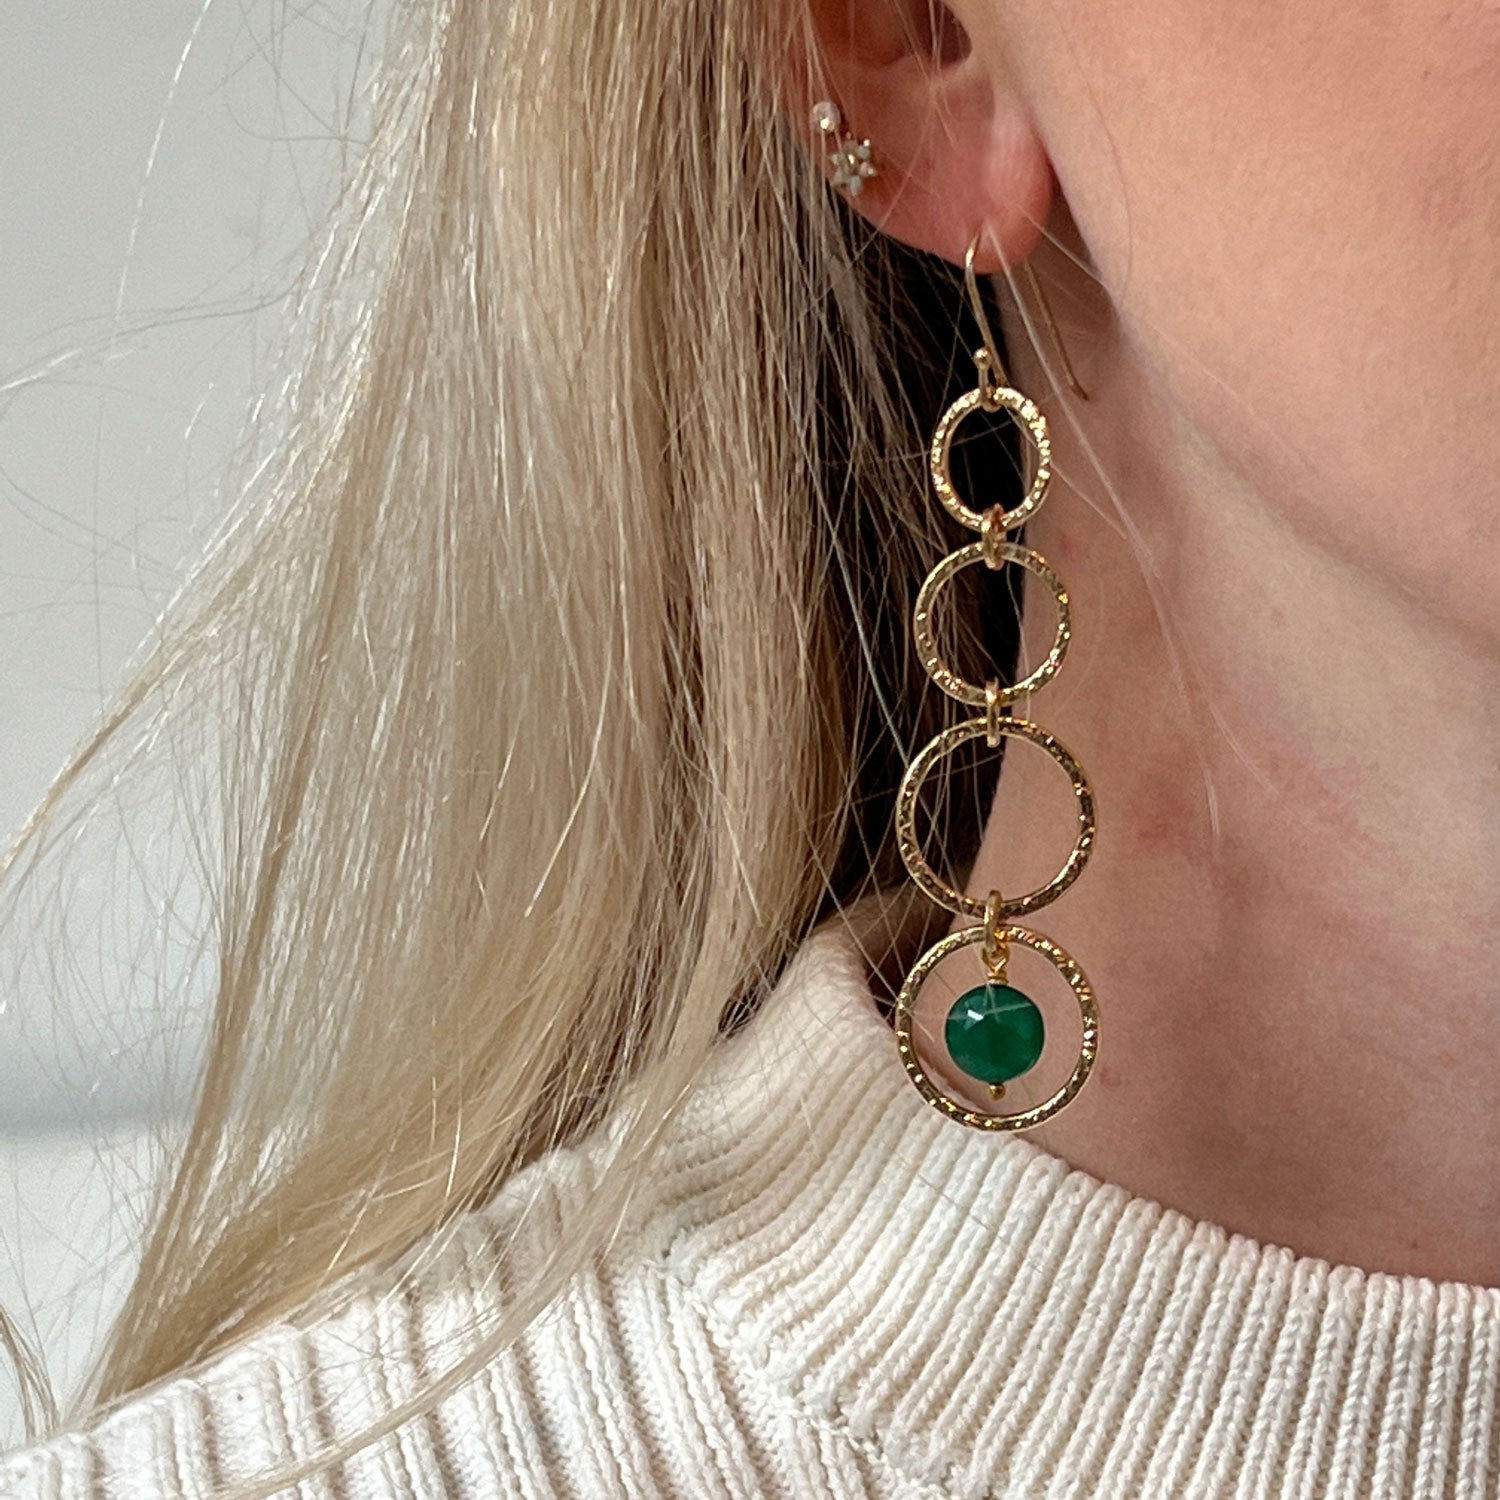 Long Loop Earrings with Green Onyx